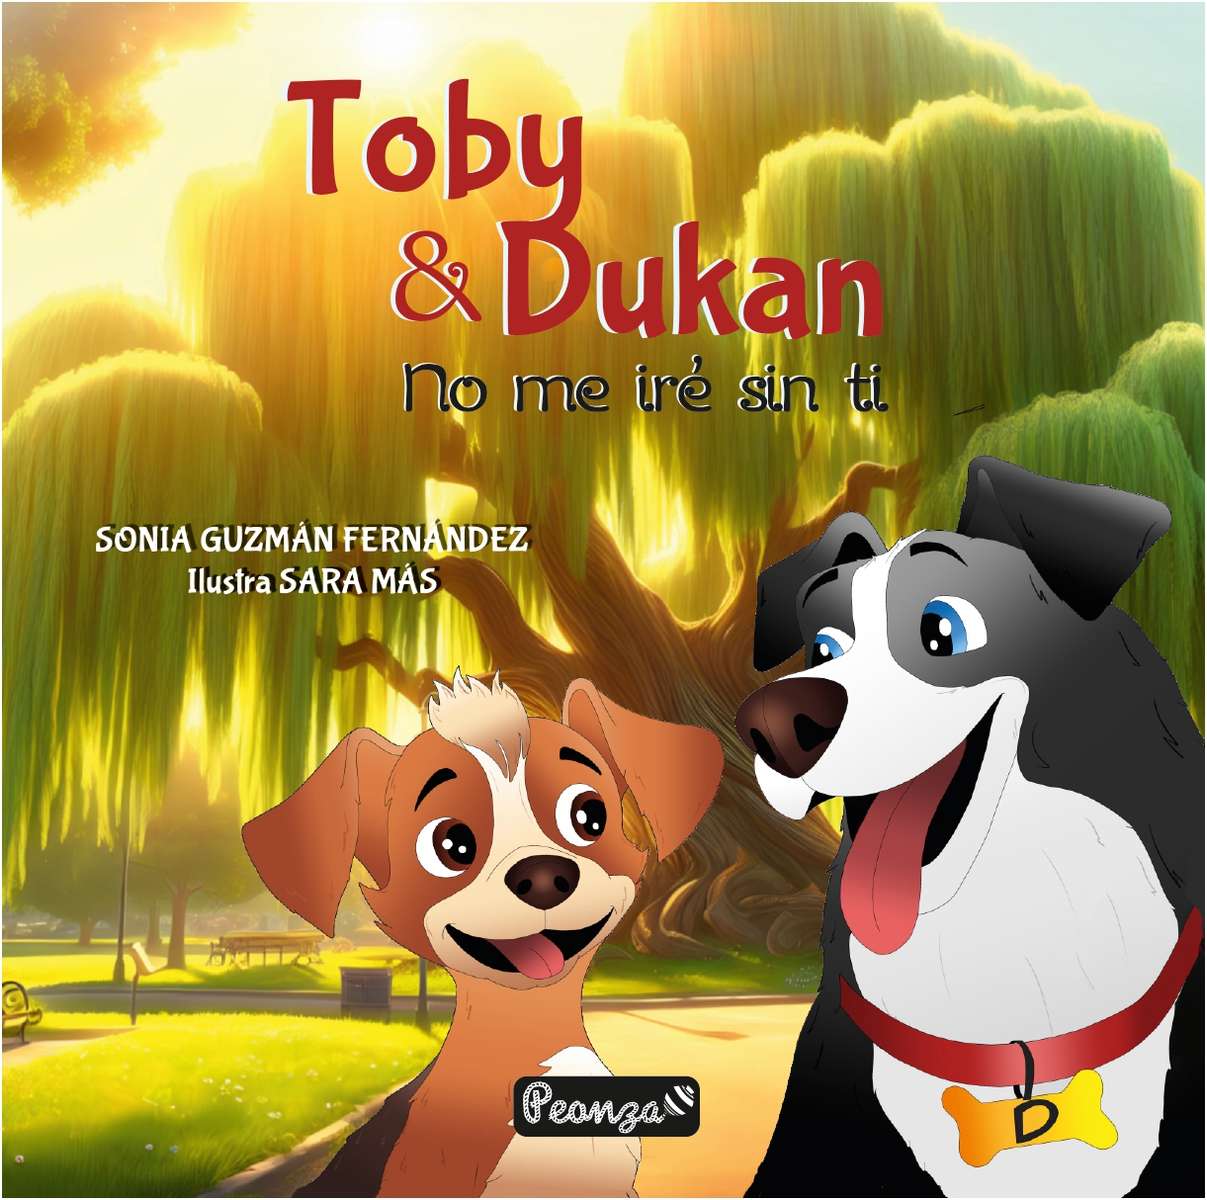 Toby és Dukan online puzzle